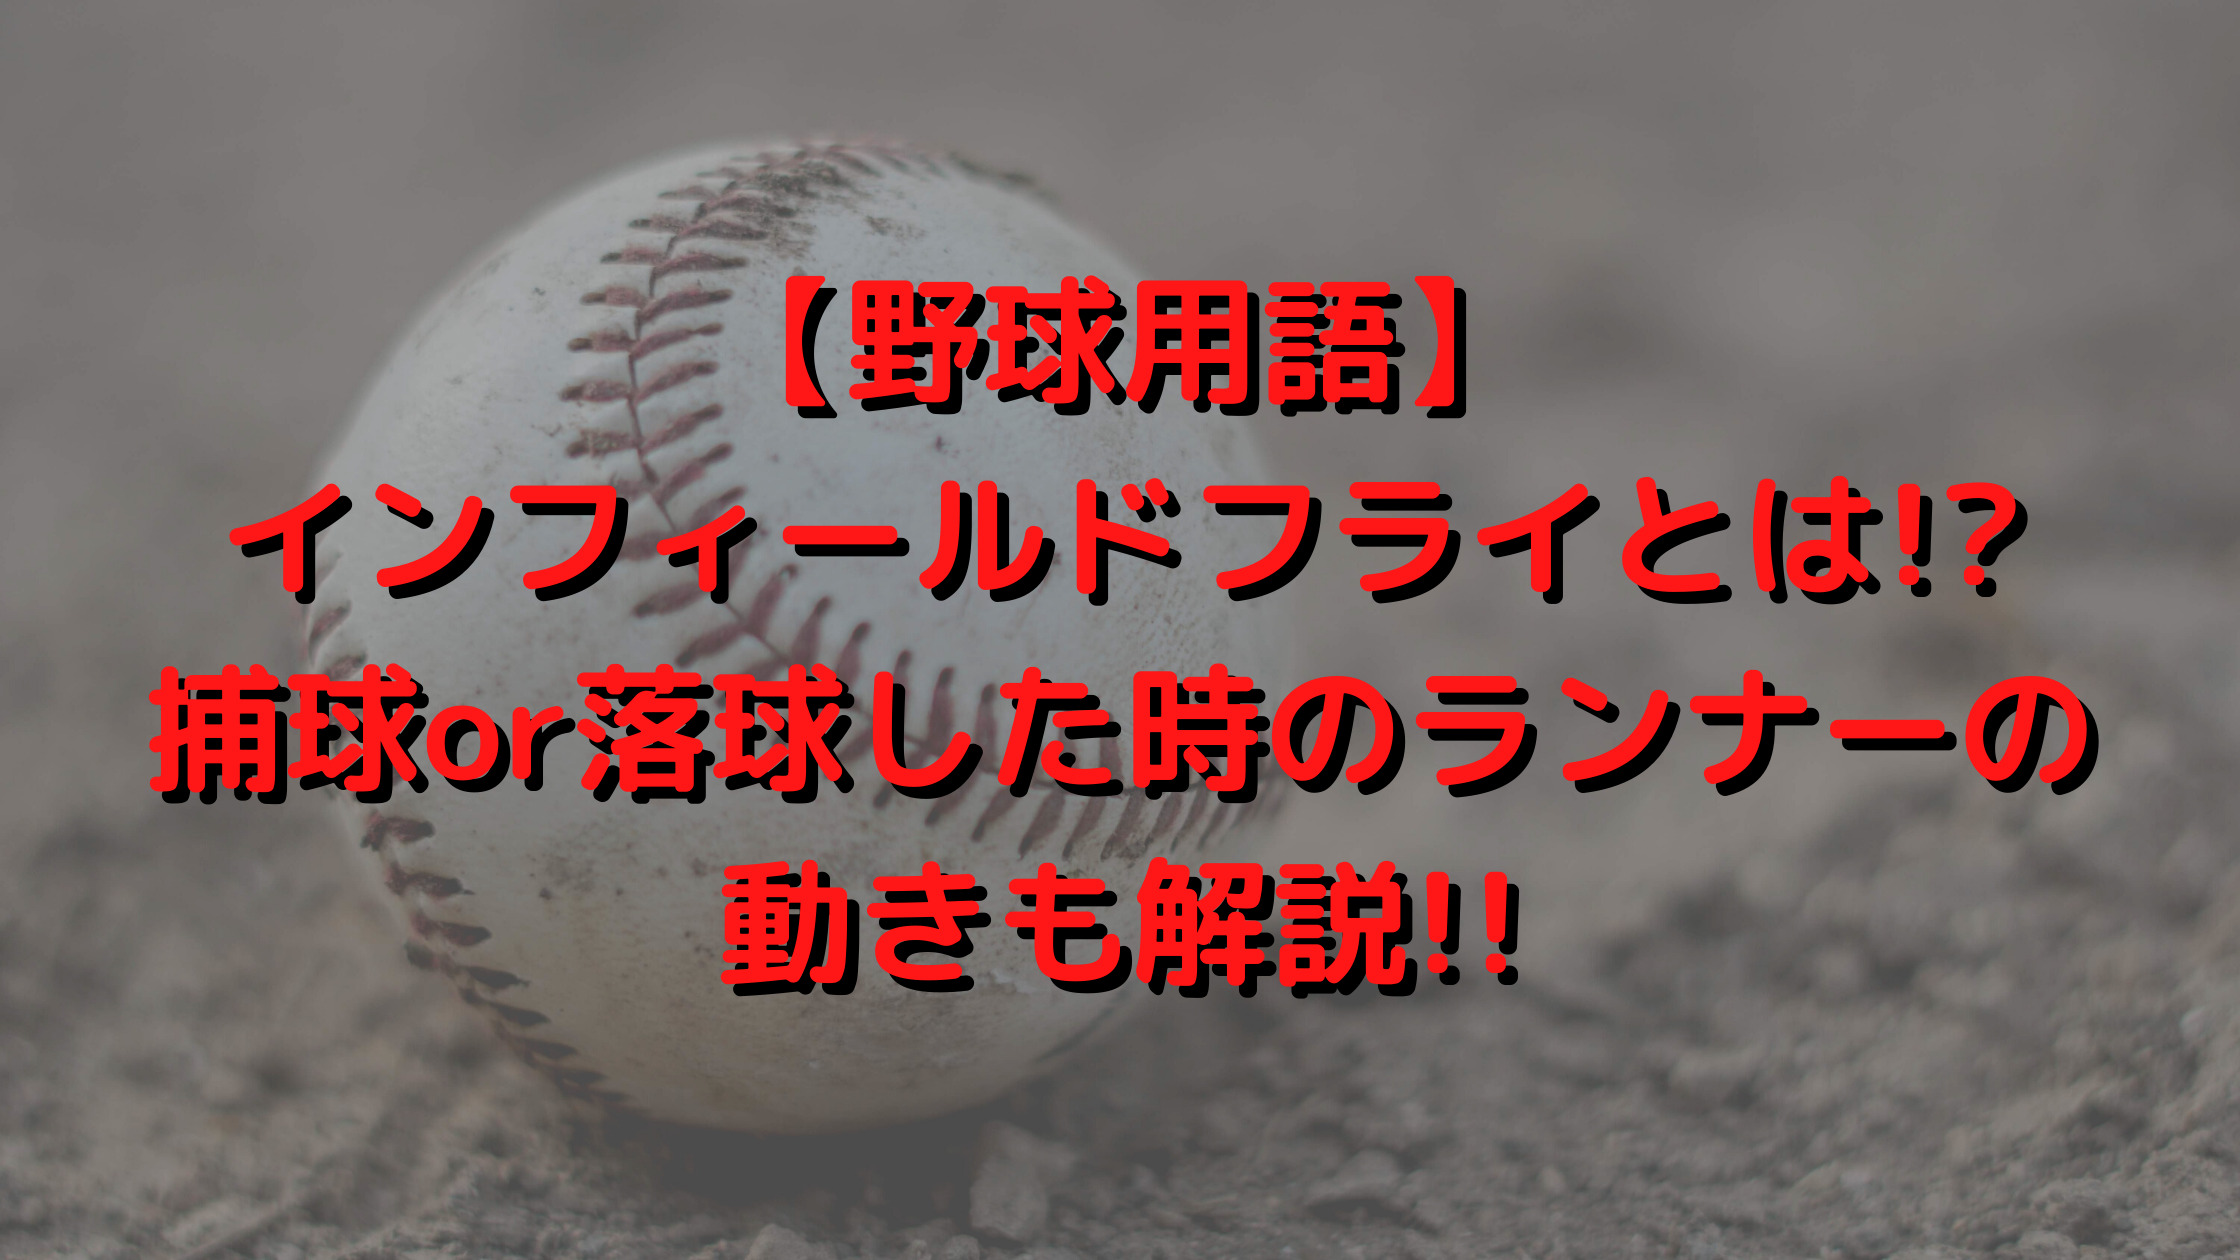 【野球用語】インフィールドフライとは!?捕球or落球した時のランナーの動きも解説!!